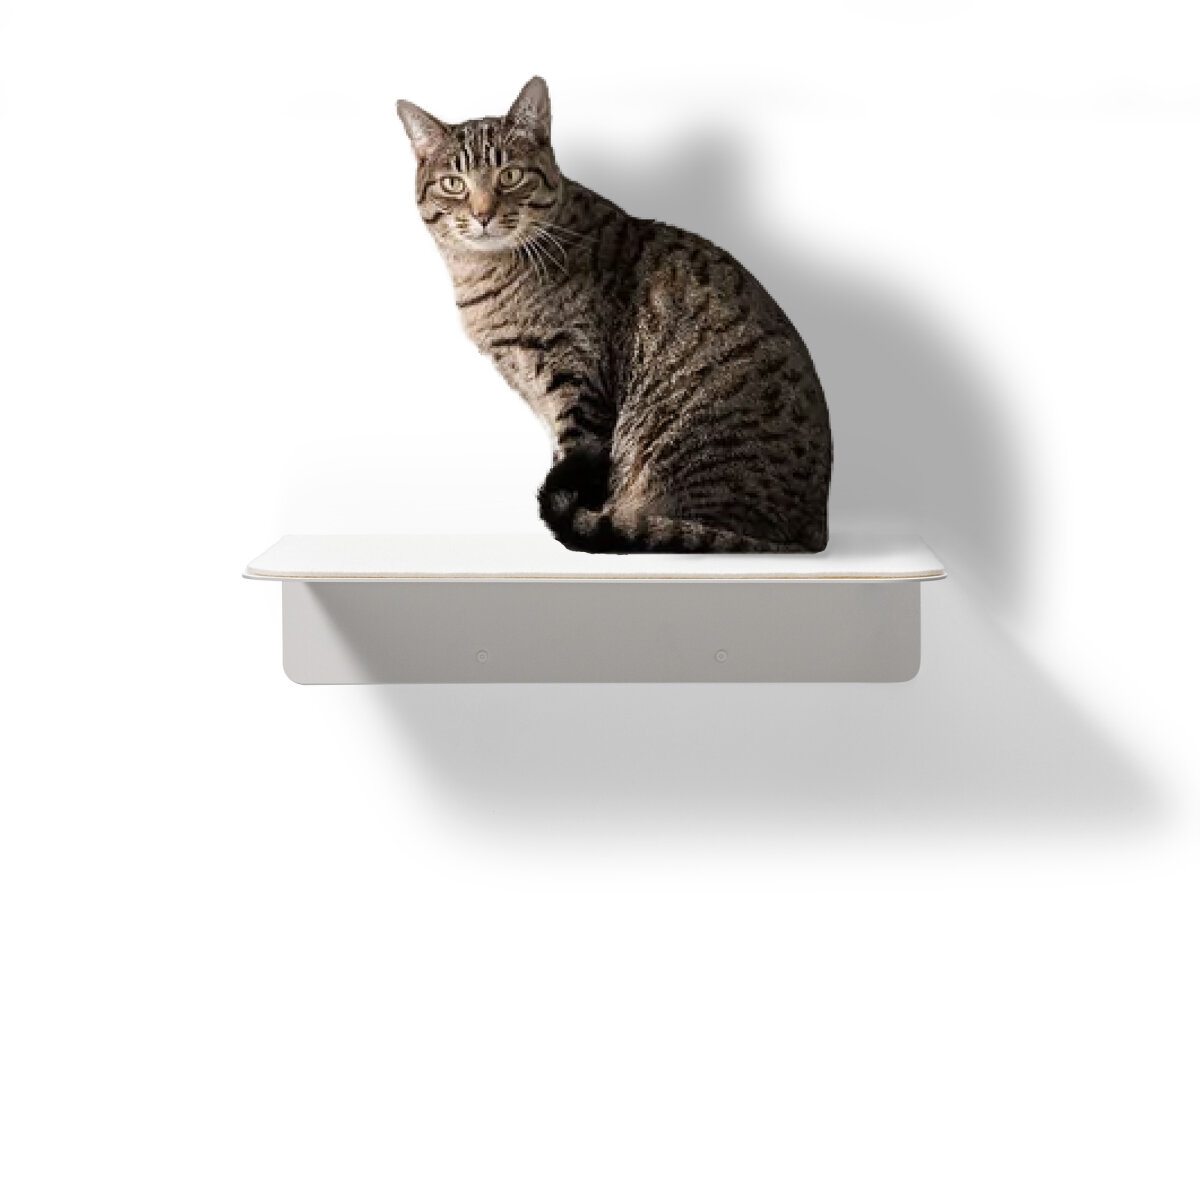 STYA Katzen Wandliege WL 350 | Design Wandmöbel Katzenkletterwand aus Metall - Katzengerecht, modern und minimalistisch, Premium Qualität